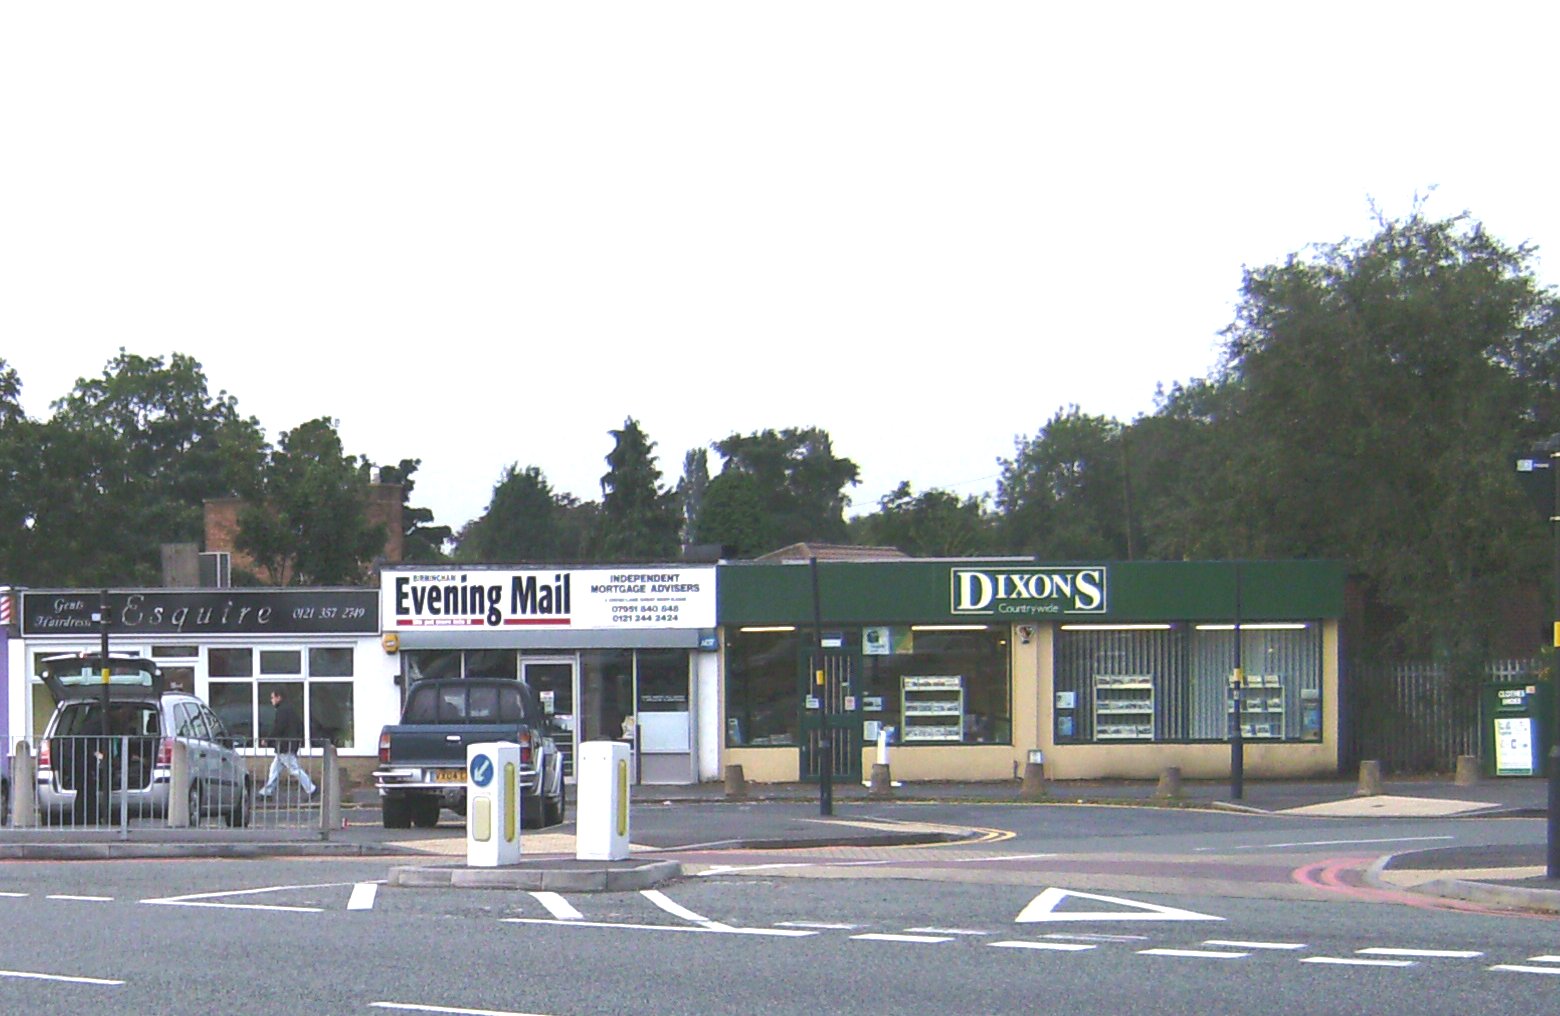 Shops on corner of Cross Lane